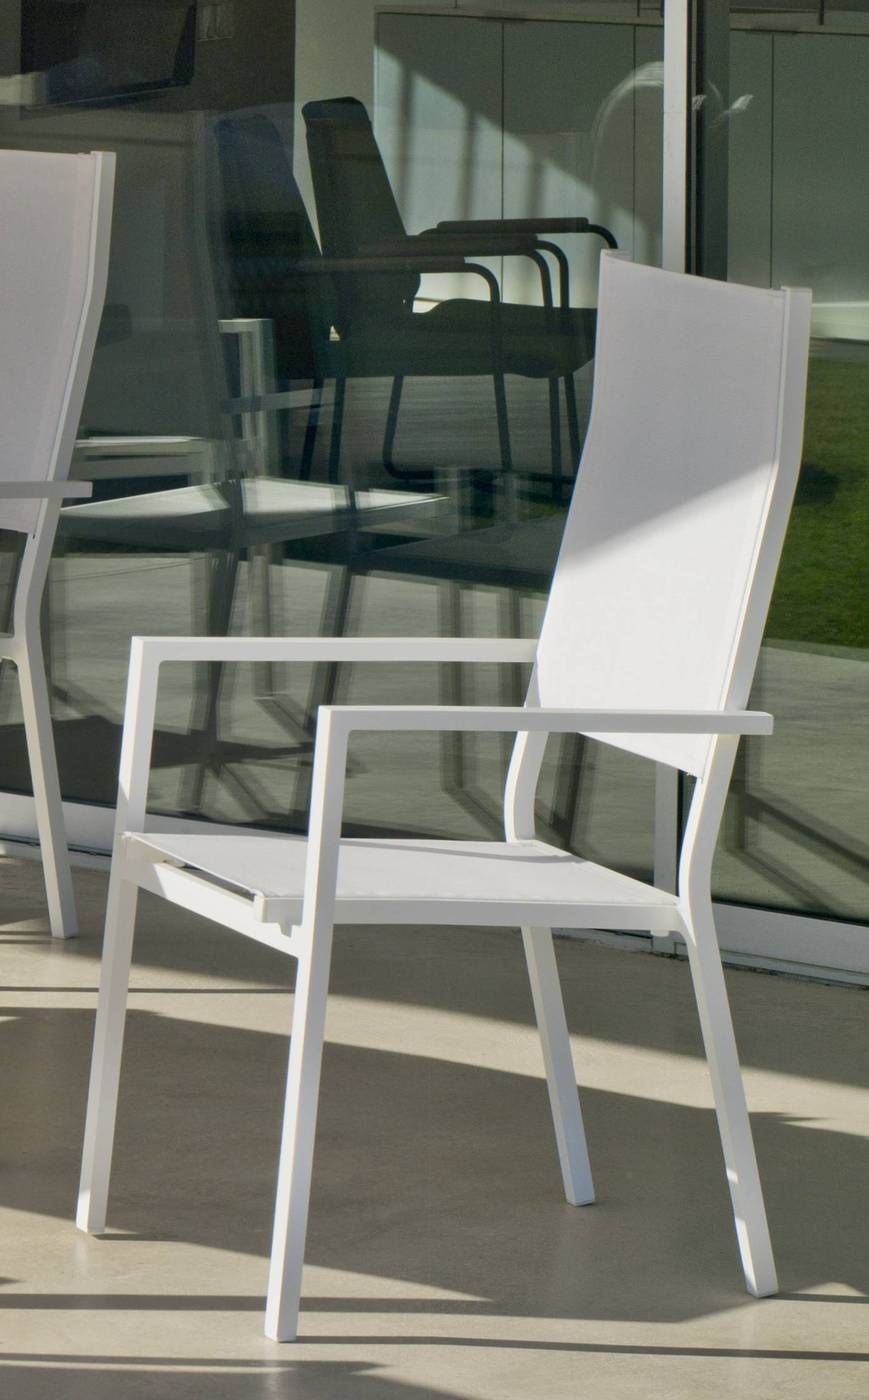 Set Córcega-160-4 Janeiro - Conjunto de aluminio para jardín: Mesa rectangular con tablero HPL de 160 cm + 4 sillones altos de textilen. Colores: blanco y antracita.<br/><br/><b>OFERTA VÁLIDA HASTA FIN DE EXISTENCIAS</b> aplicable sólo a los Colores Estructura: Blanco o Antracita.<br/><b>PLAZO ENTREGA: 2 a 4 semanas</b> para dichas opciones.